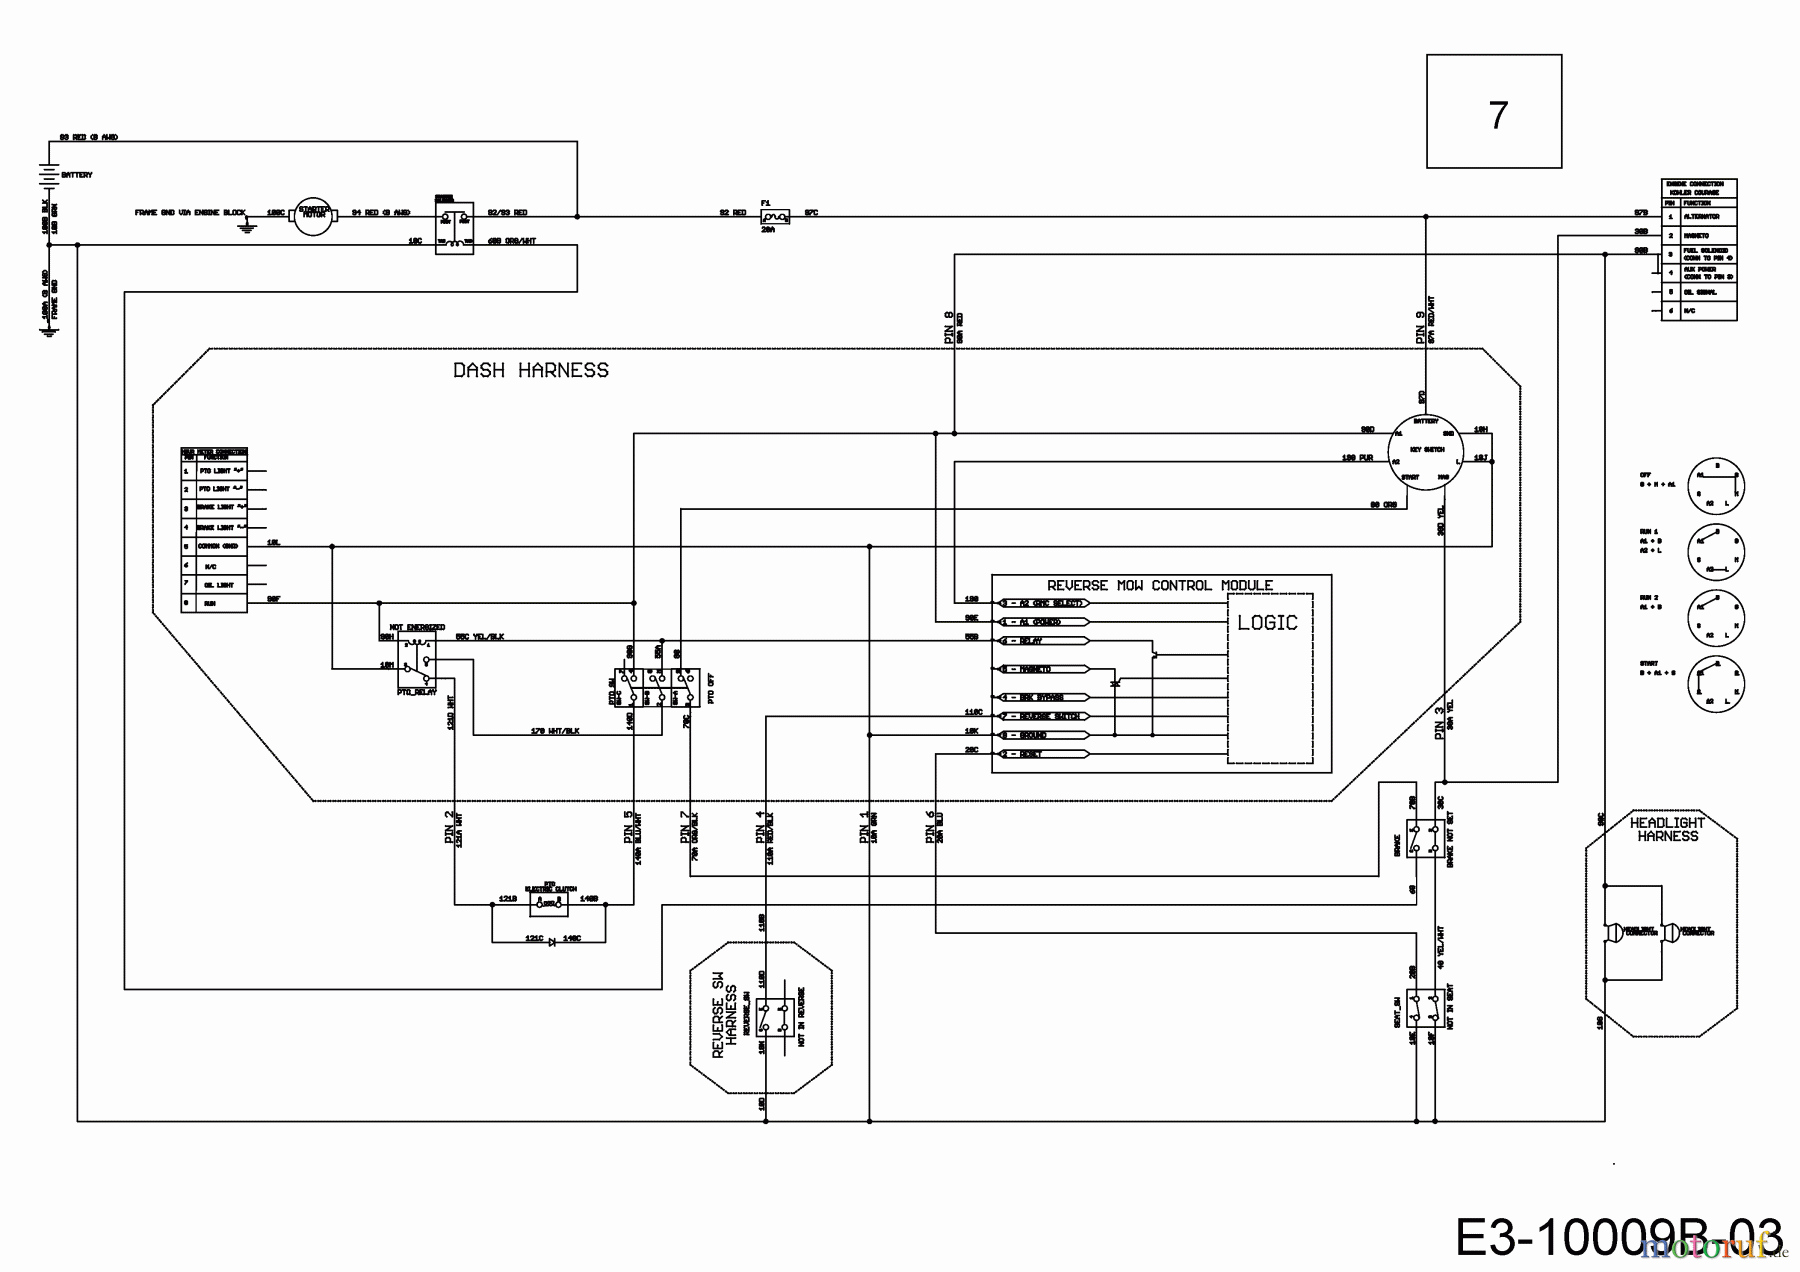  Cub Cadet Lawn tractors XT1 OS107 13A8A1CS603  (2018) Wiring diagram dashboard